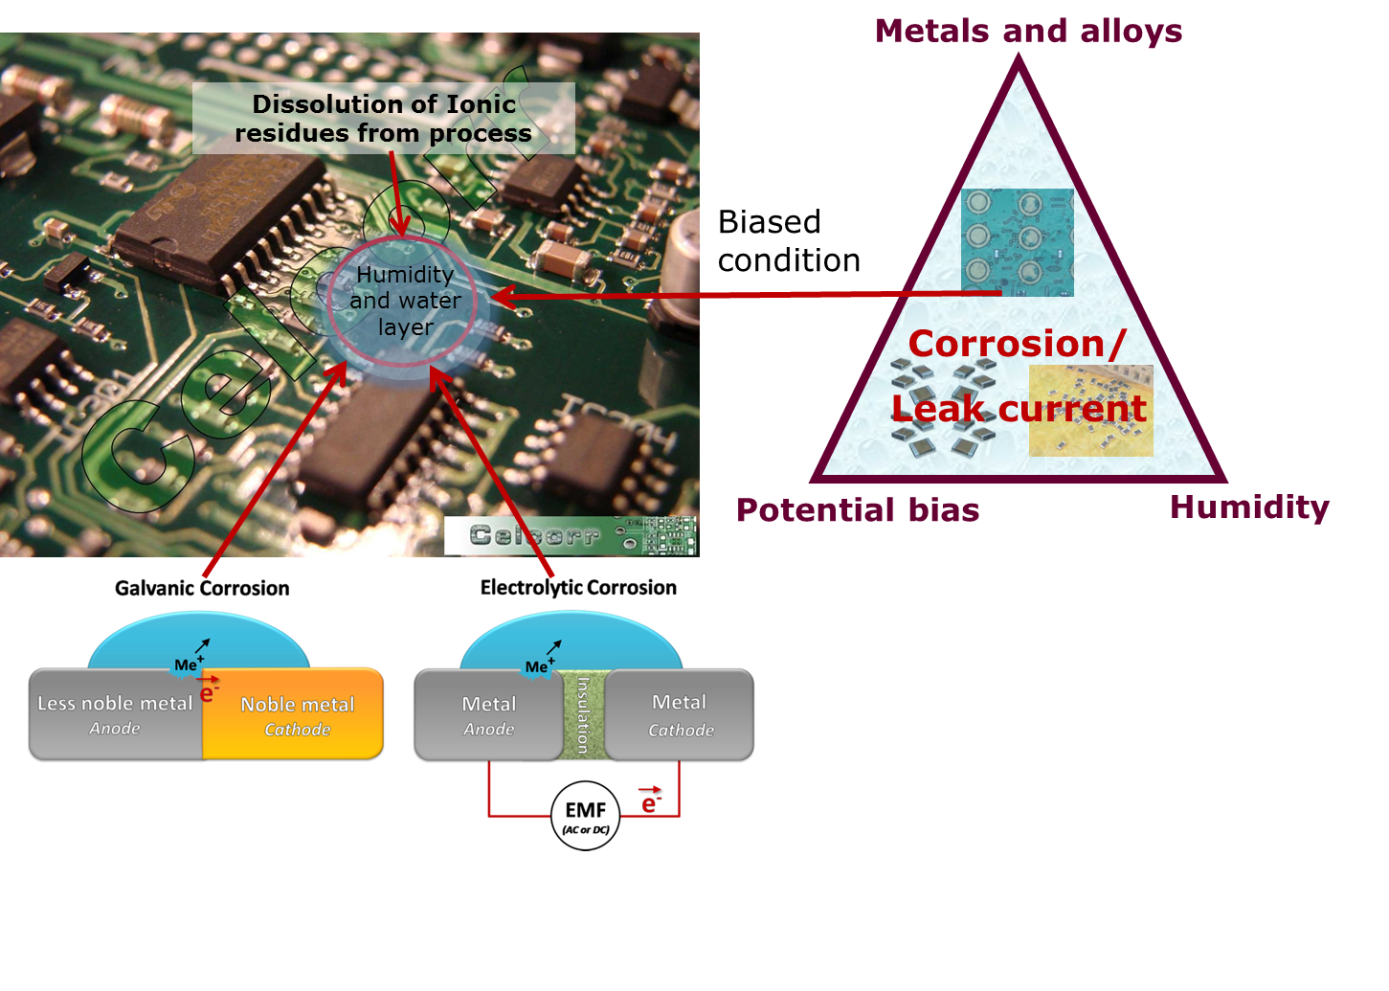 Electronic corrosion